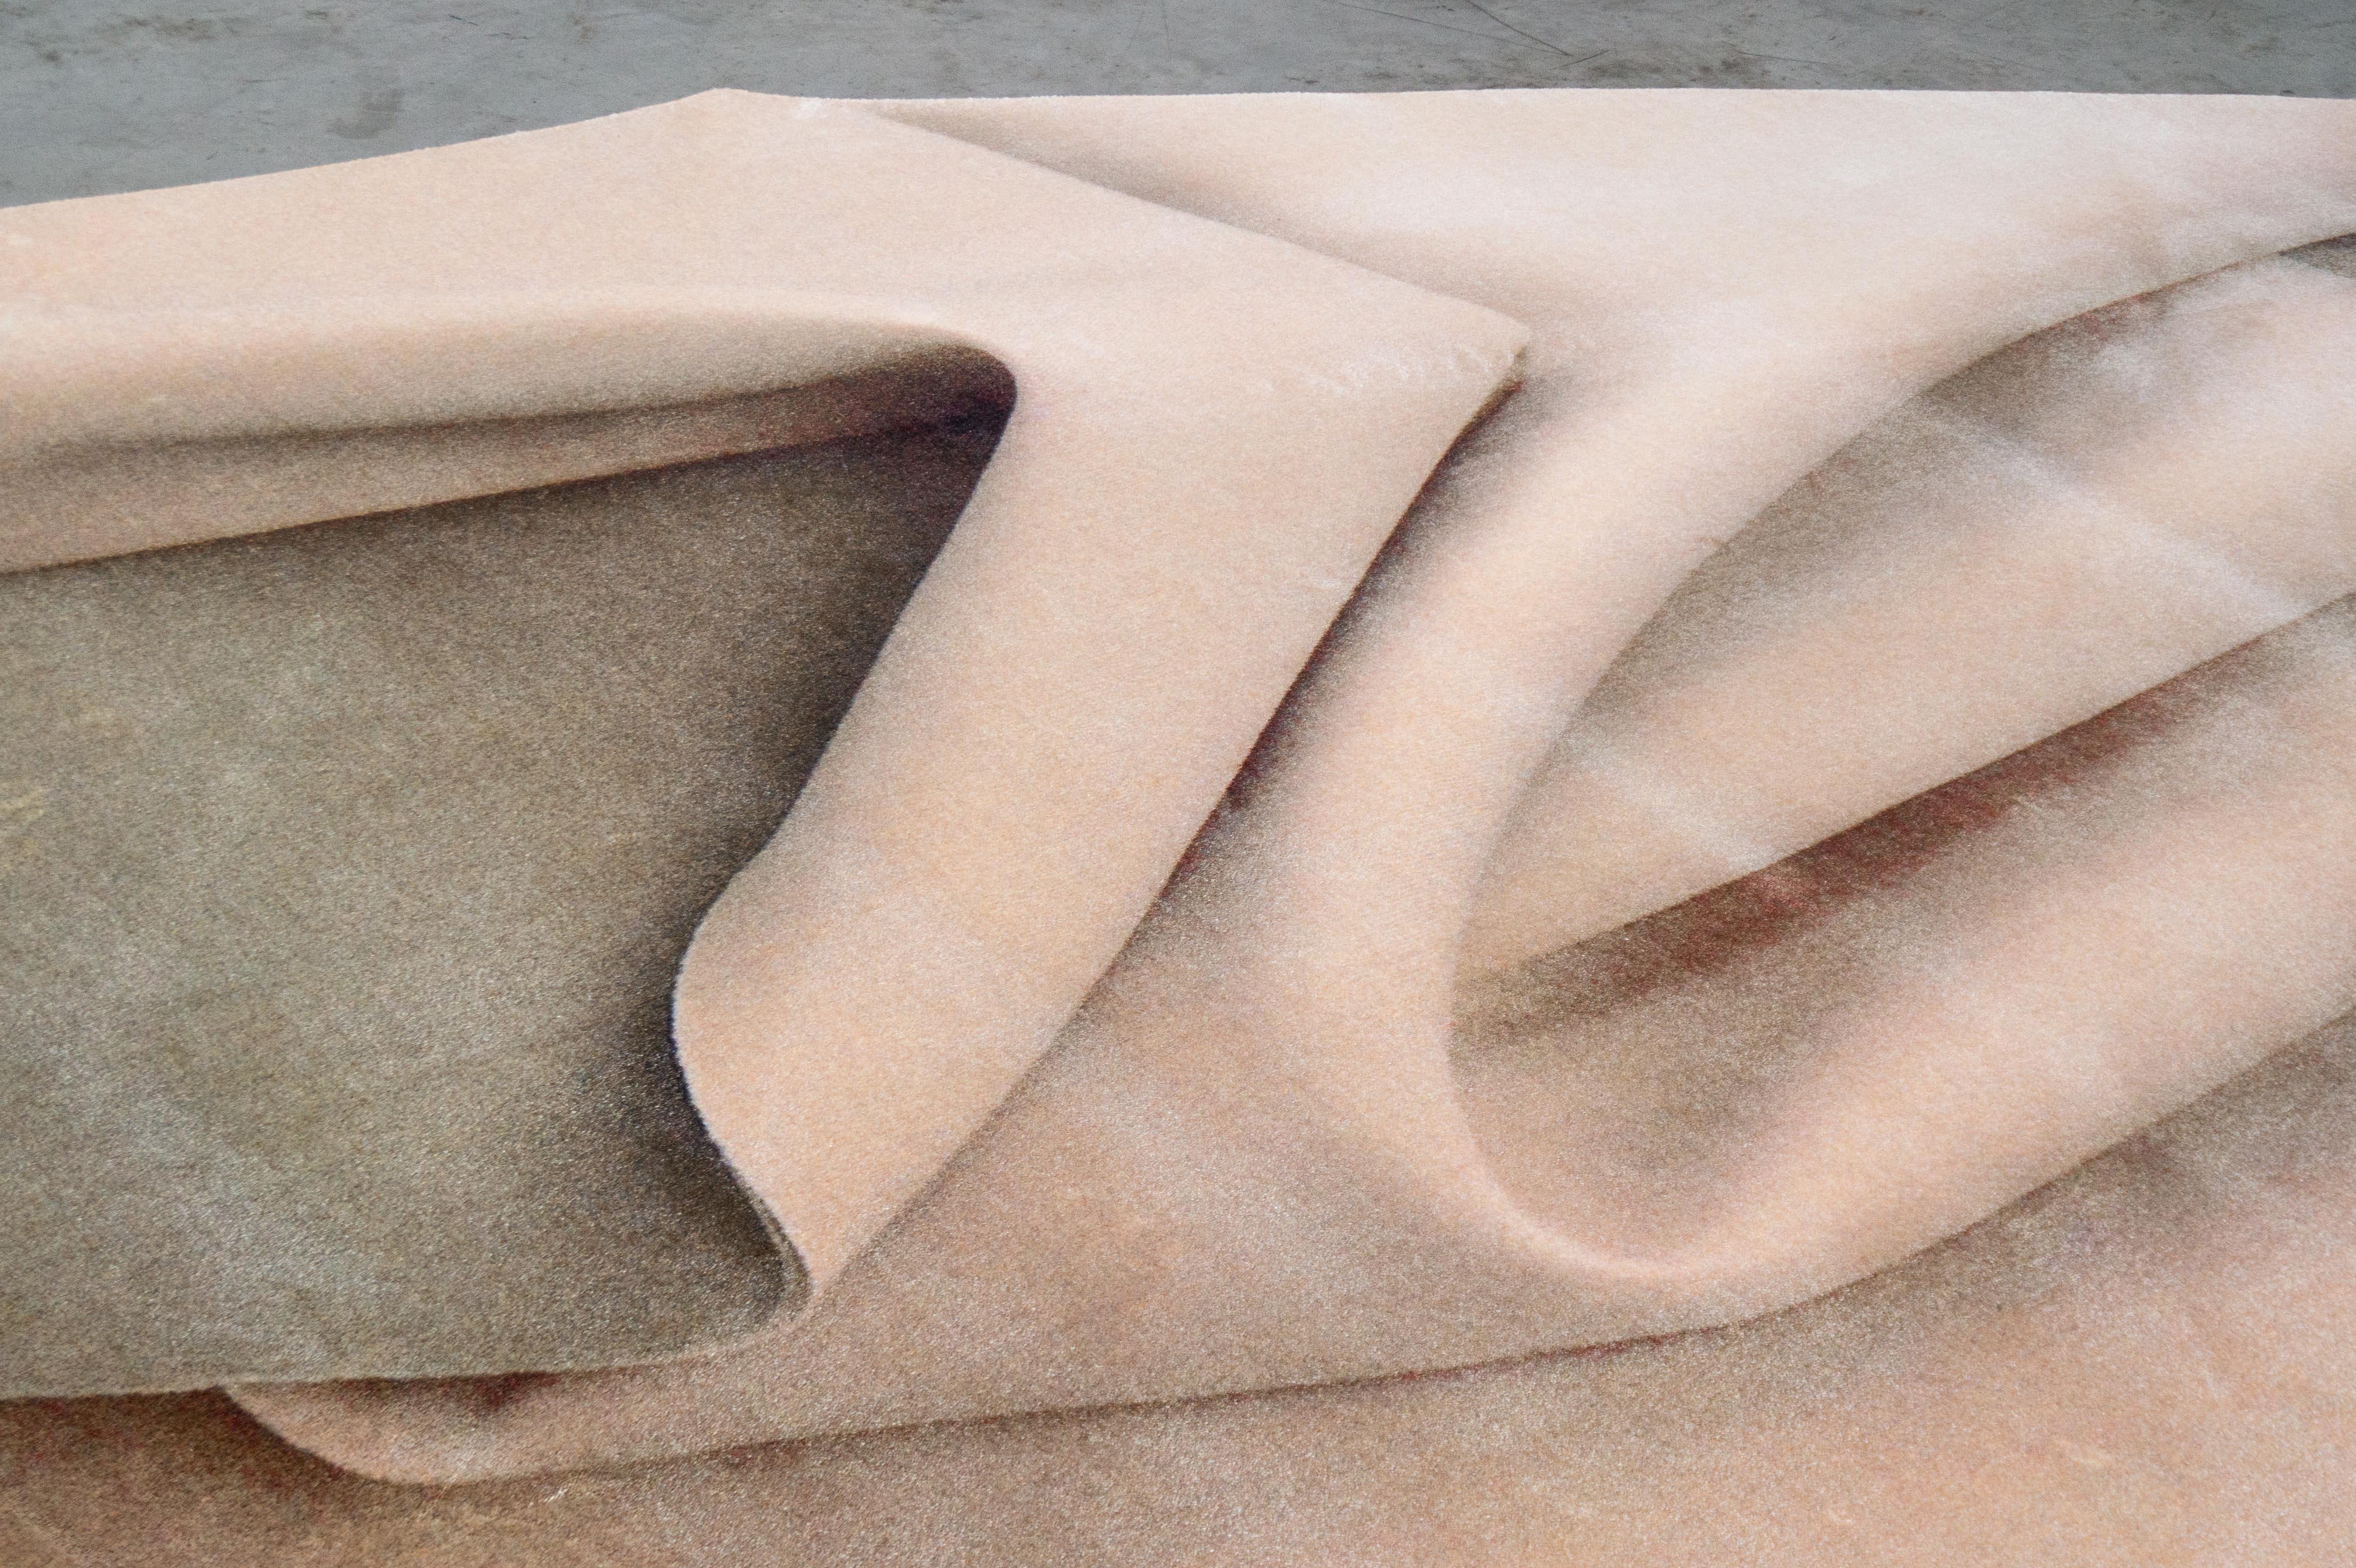 Moooi Large Nude Fold rug in Soft Yarn Polyamide by Celia Hadeler (en anglais)

Celia Hadeler est une artiste contemporaine, basée aux Pays-Bas. Son travail est fait de contradictions et de contrastes. D'origine péruvienne et allemande, Celia est